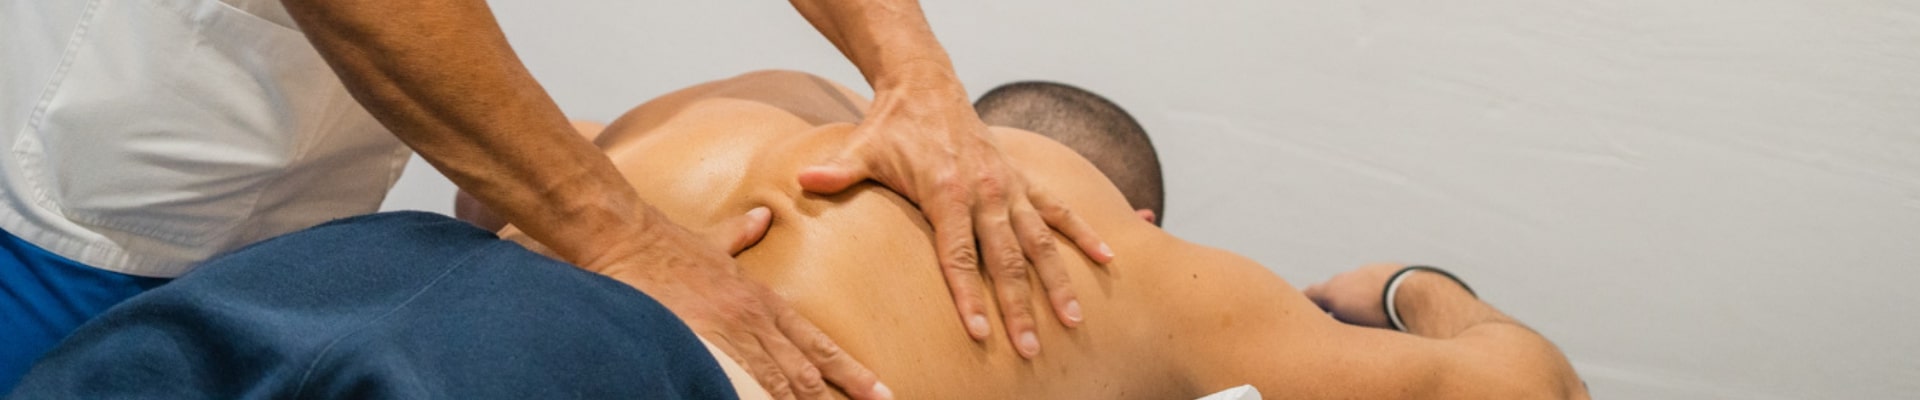 fisioterapia pescara massaggio sportivo